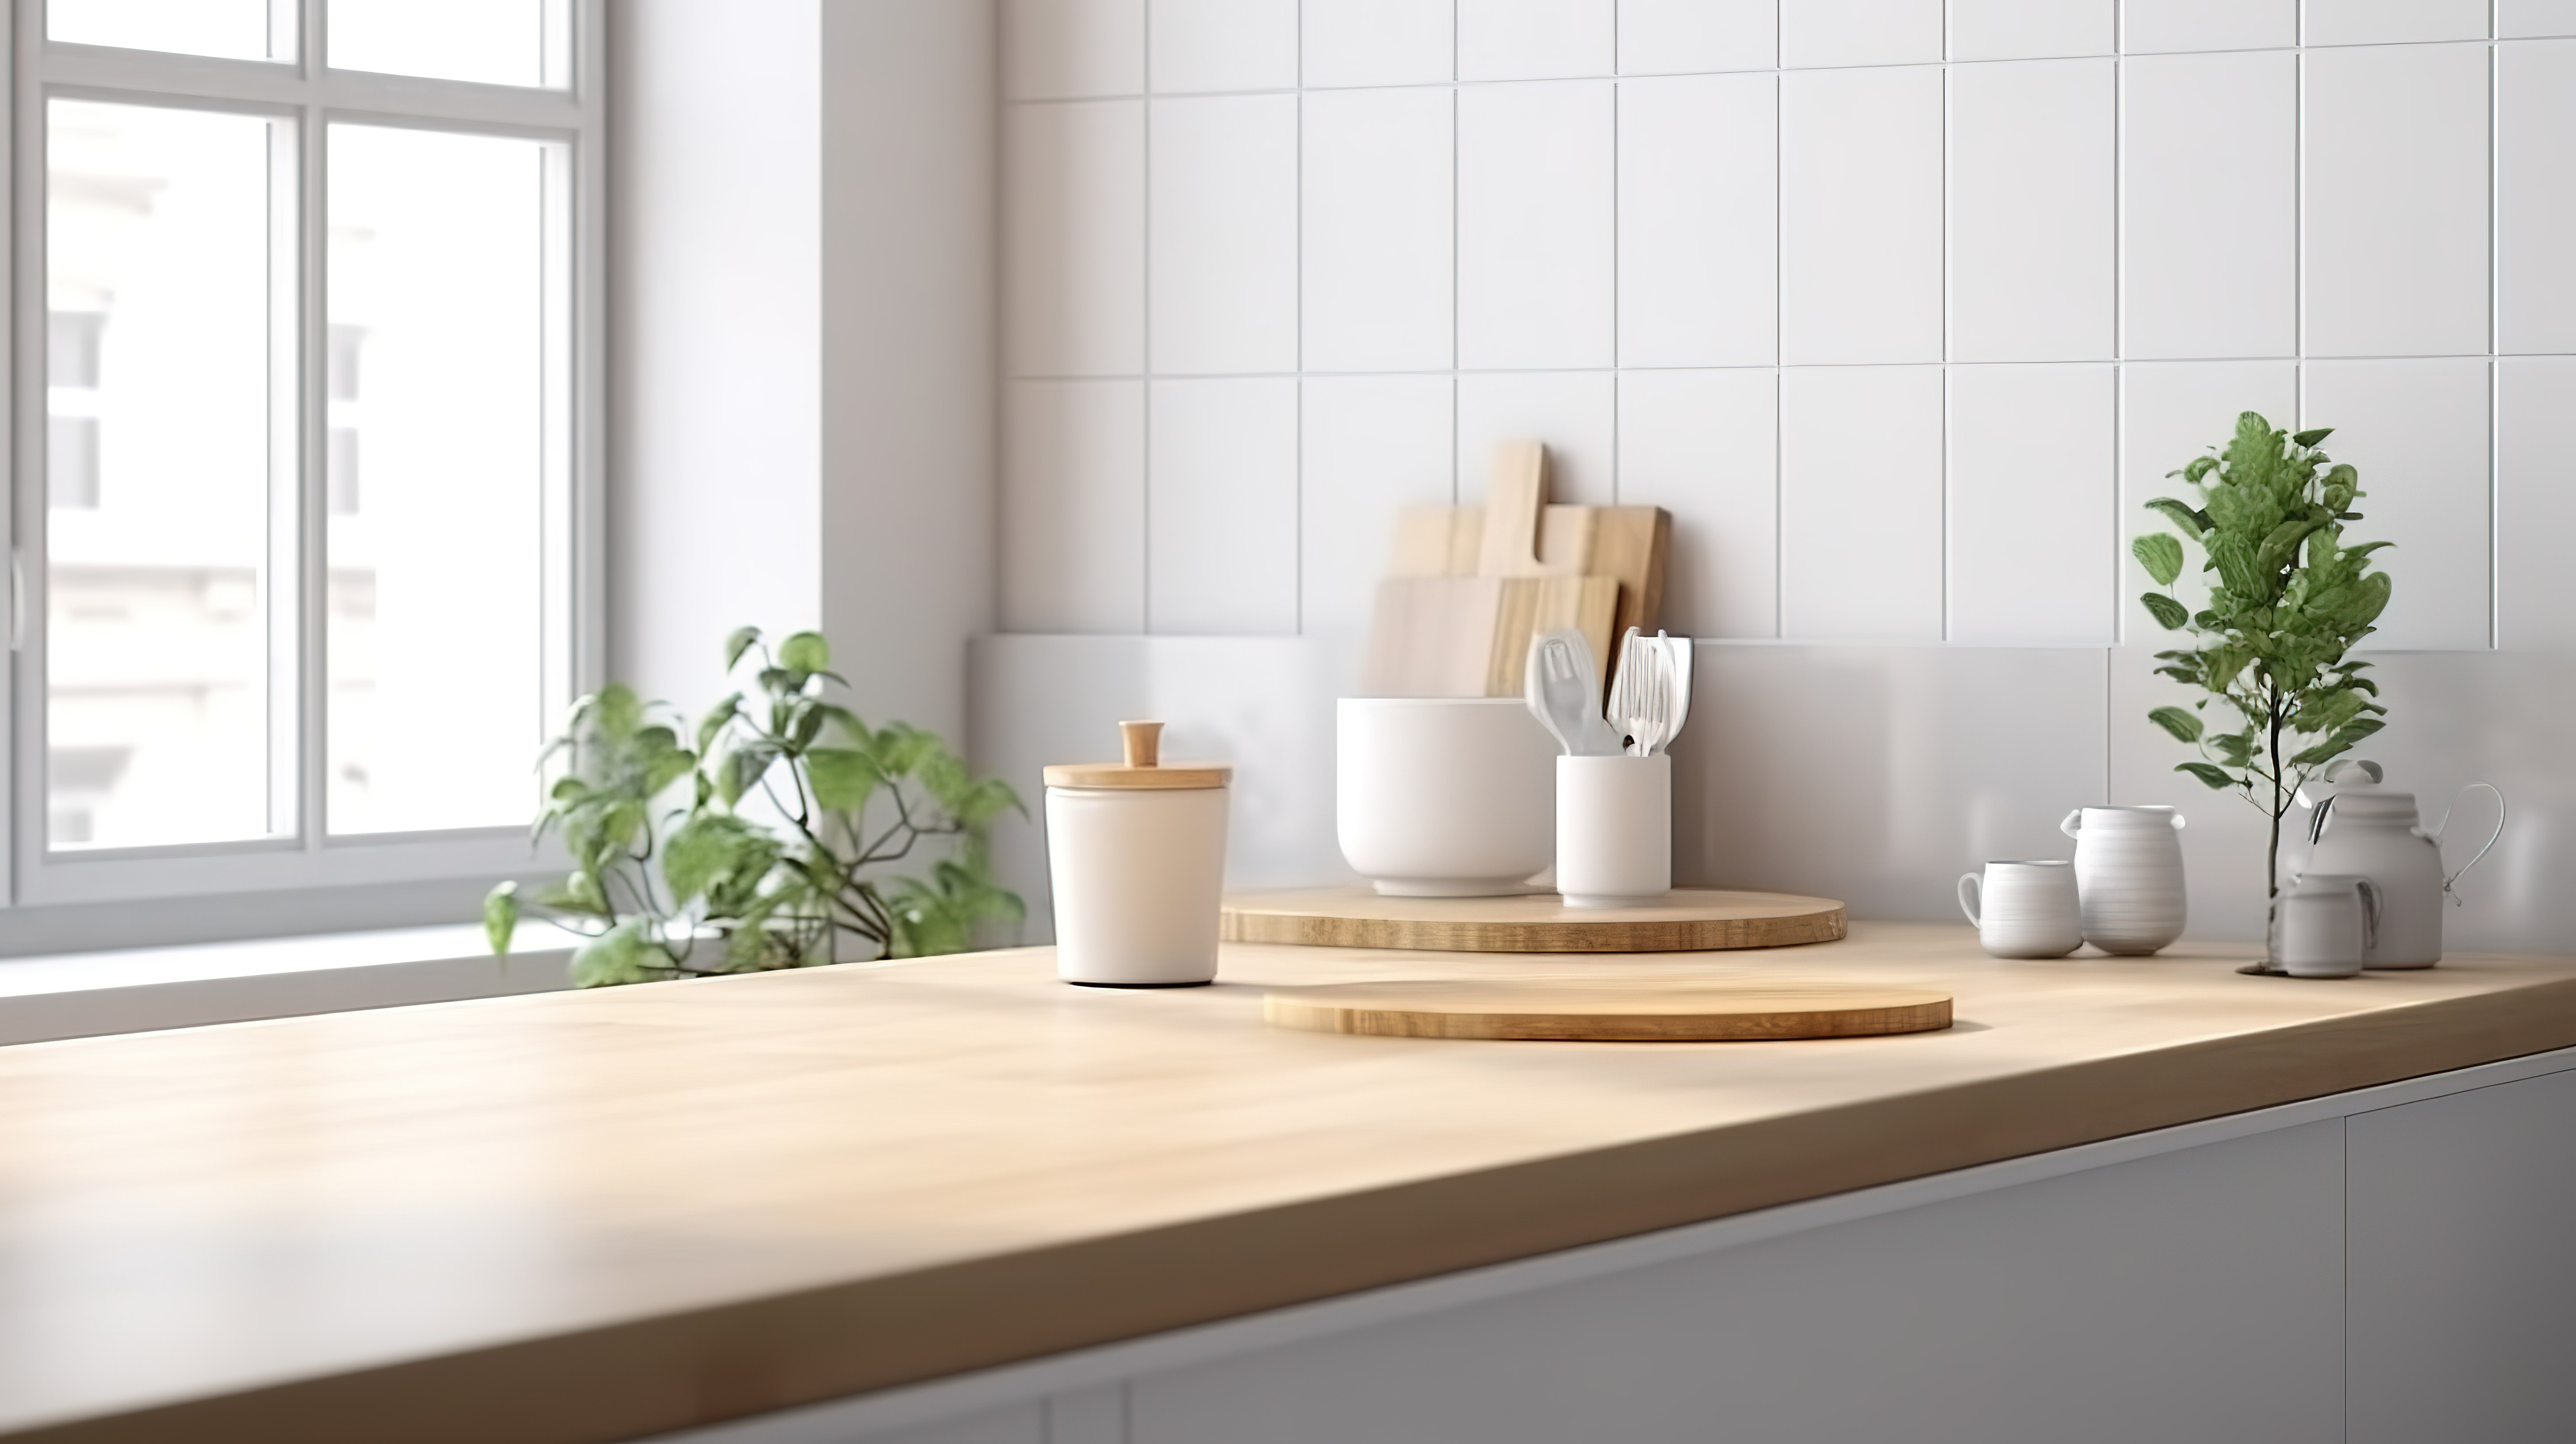 3D 渲染的简约斯堪的纳维亚厨房台面非常适合放置在厨房空间图片